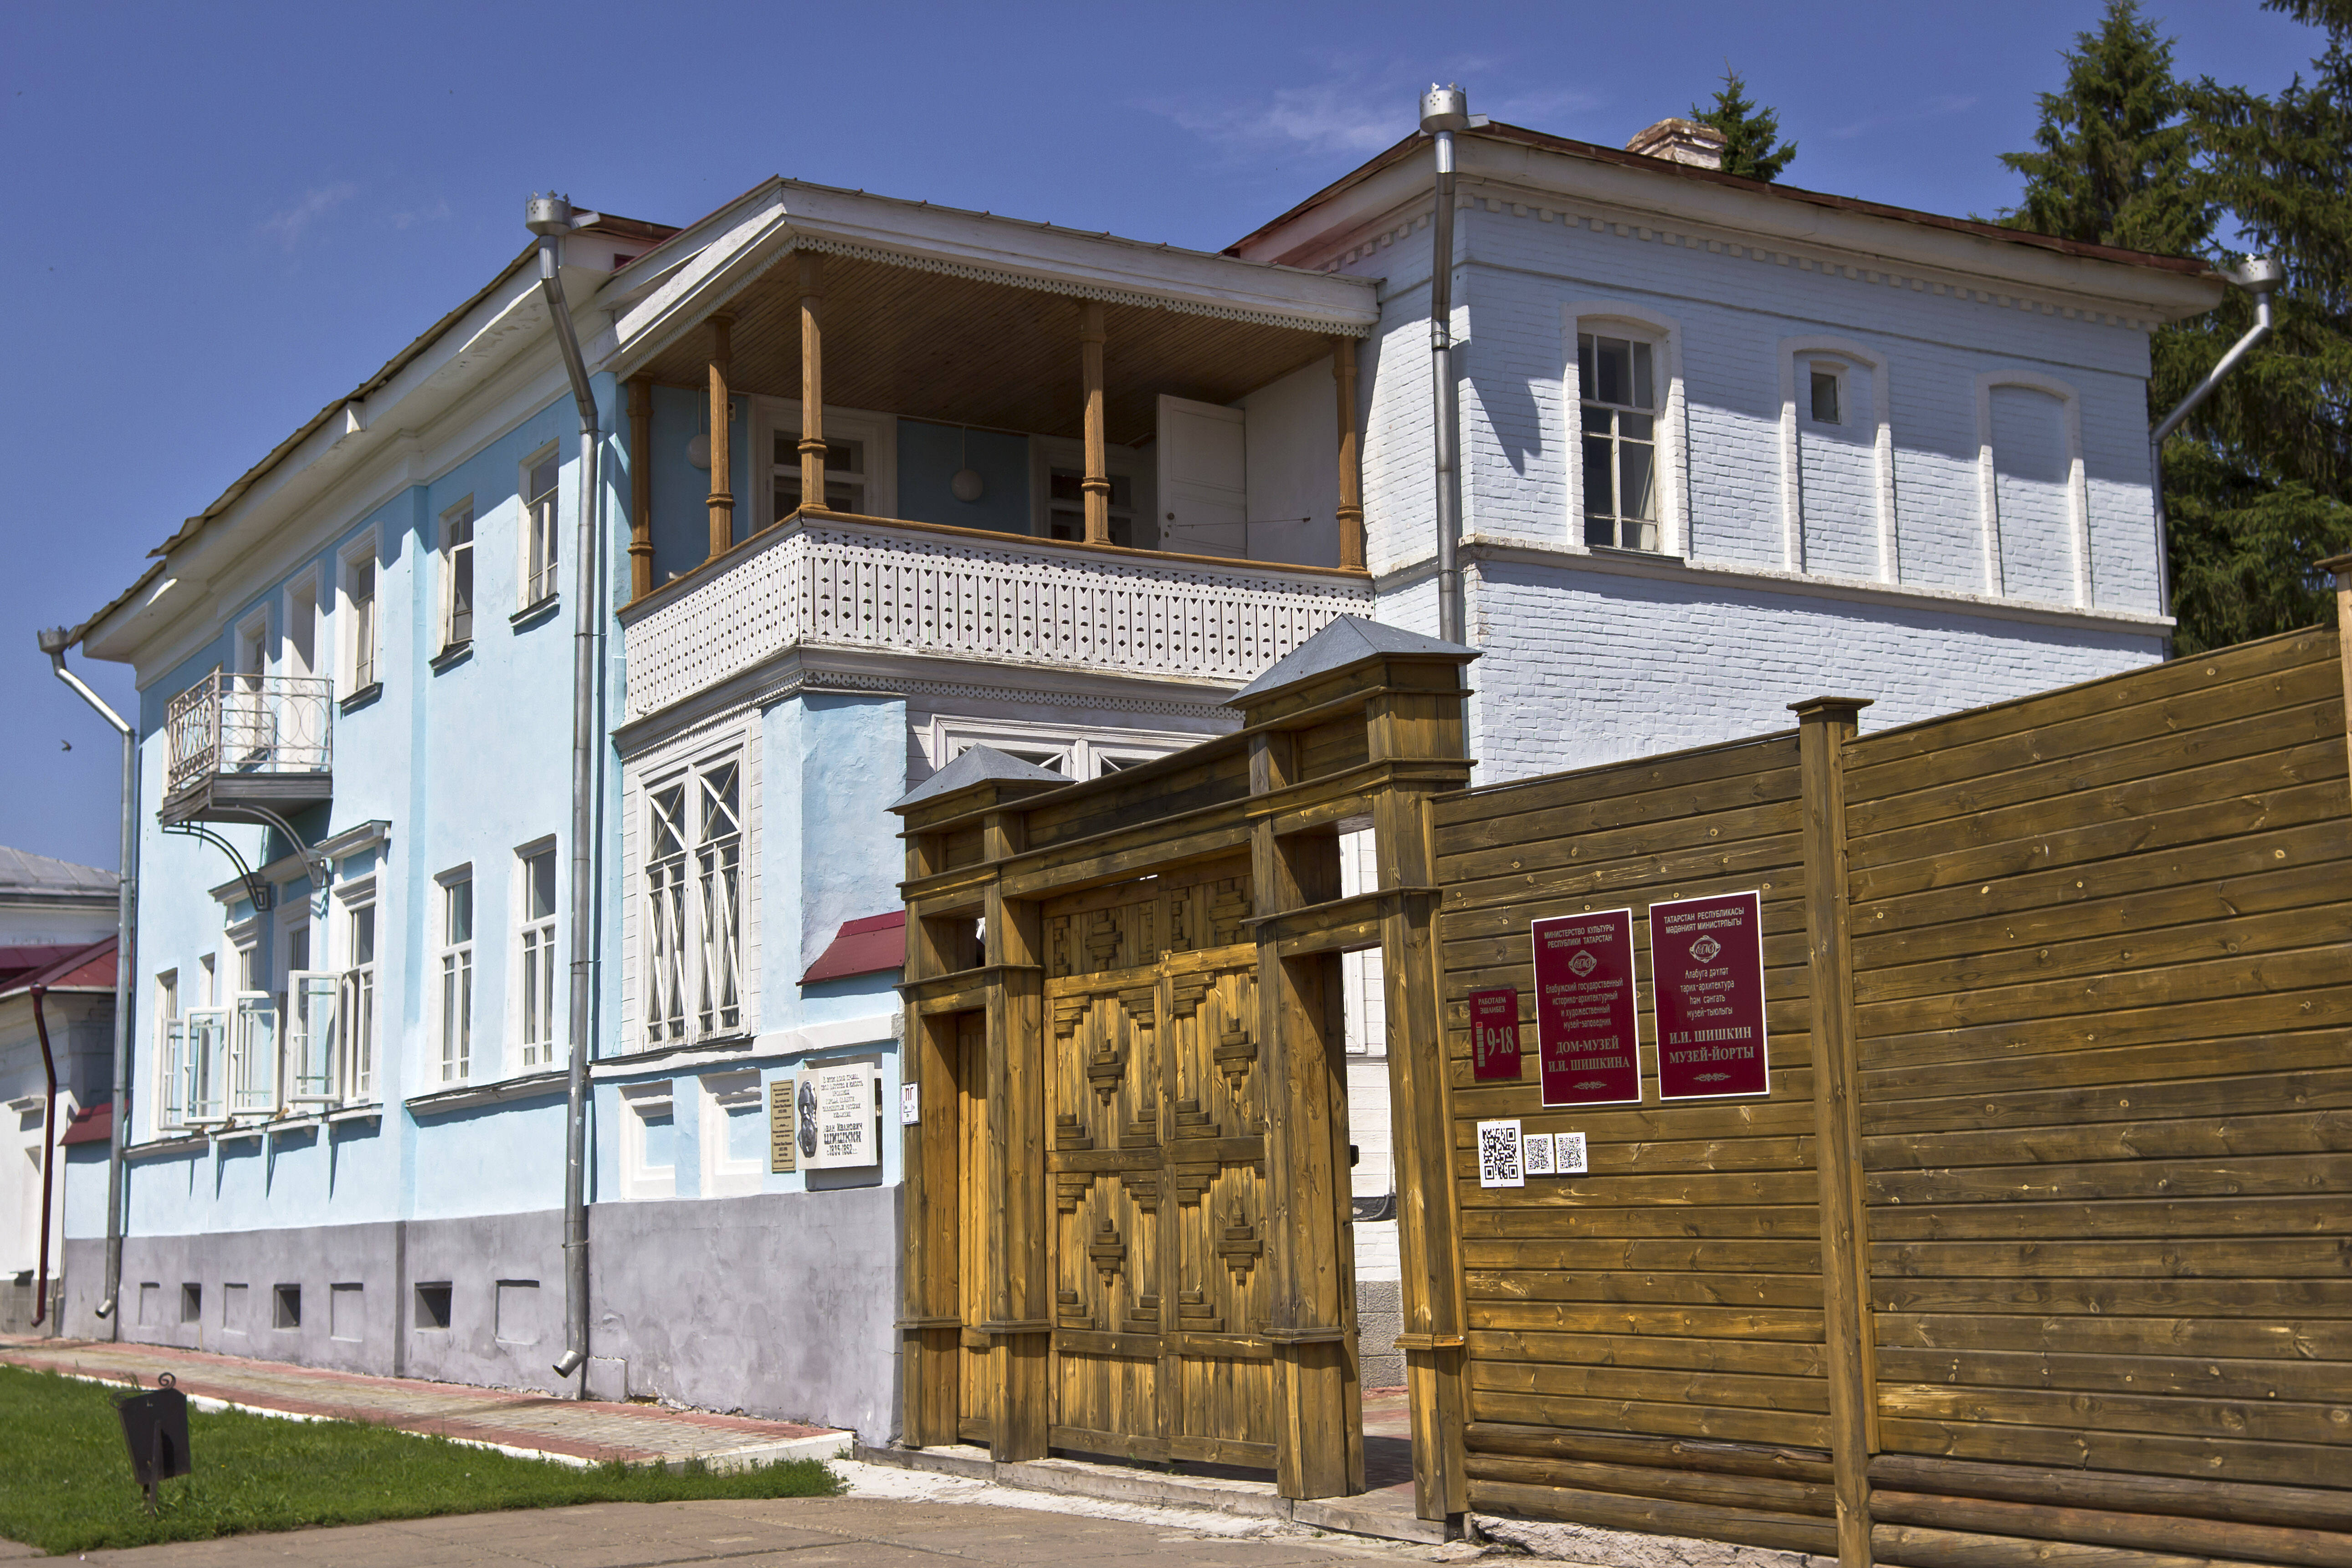 Дом в Елабуге, в котором прошло детство И.И. Шишкина. В настоящее время здесь размещён музей художника. Фото: Flipfloptrigger CC BY-SA 4.0